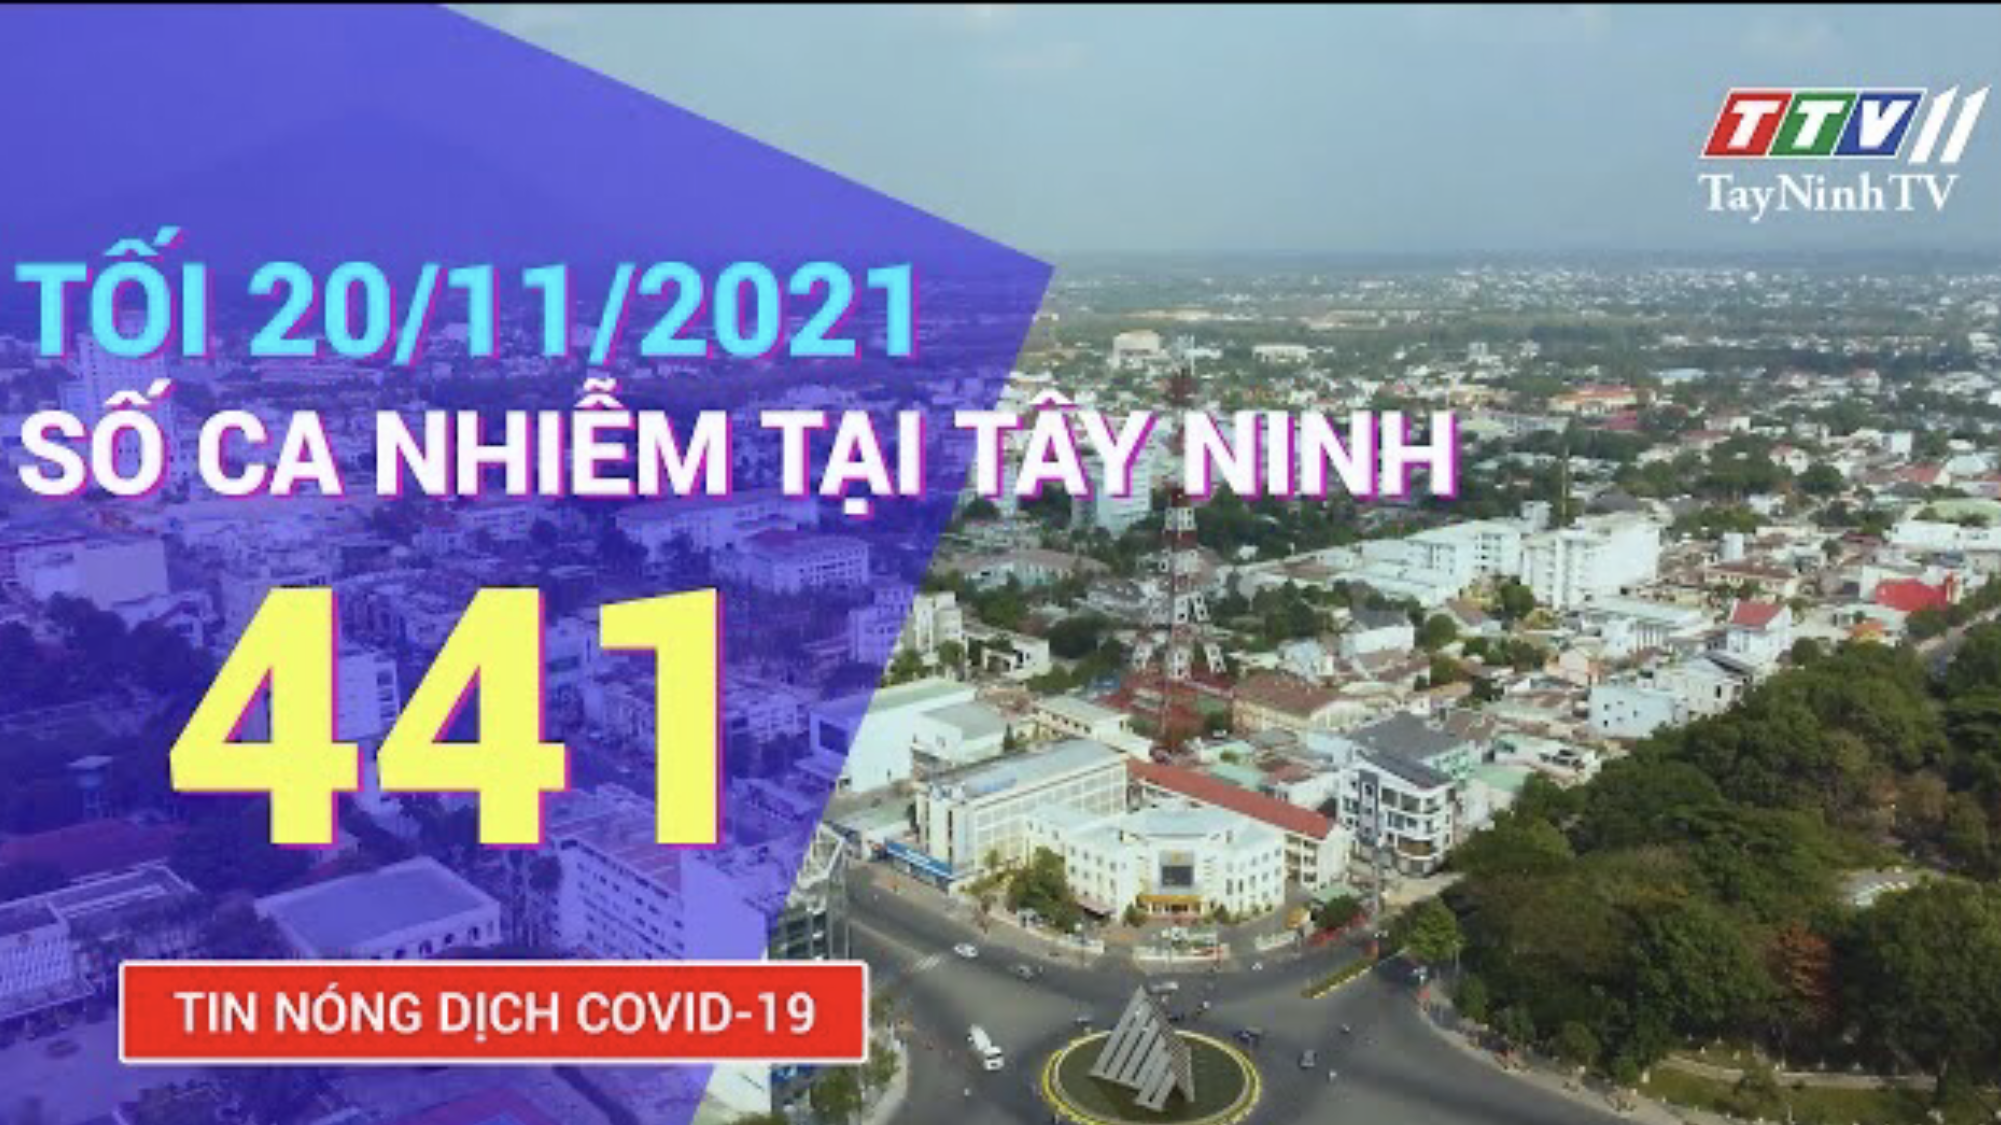 TIN TỨC COVID-19 TỐI 20/11/2021 | Tin tức hôm nay | TayNinhTV